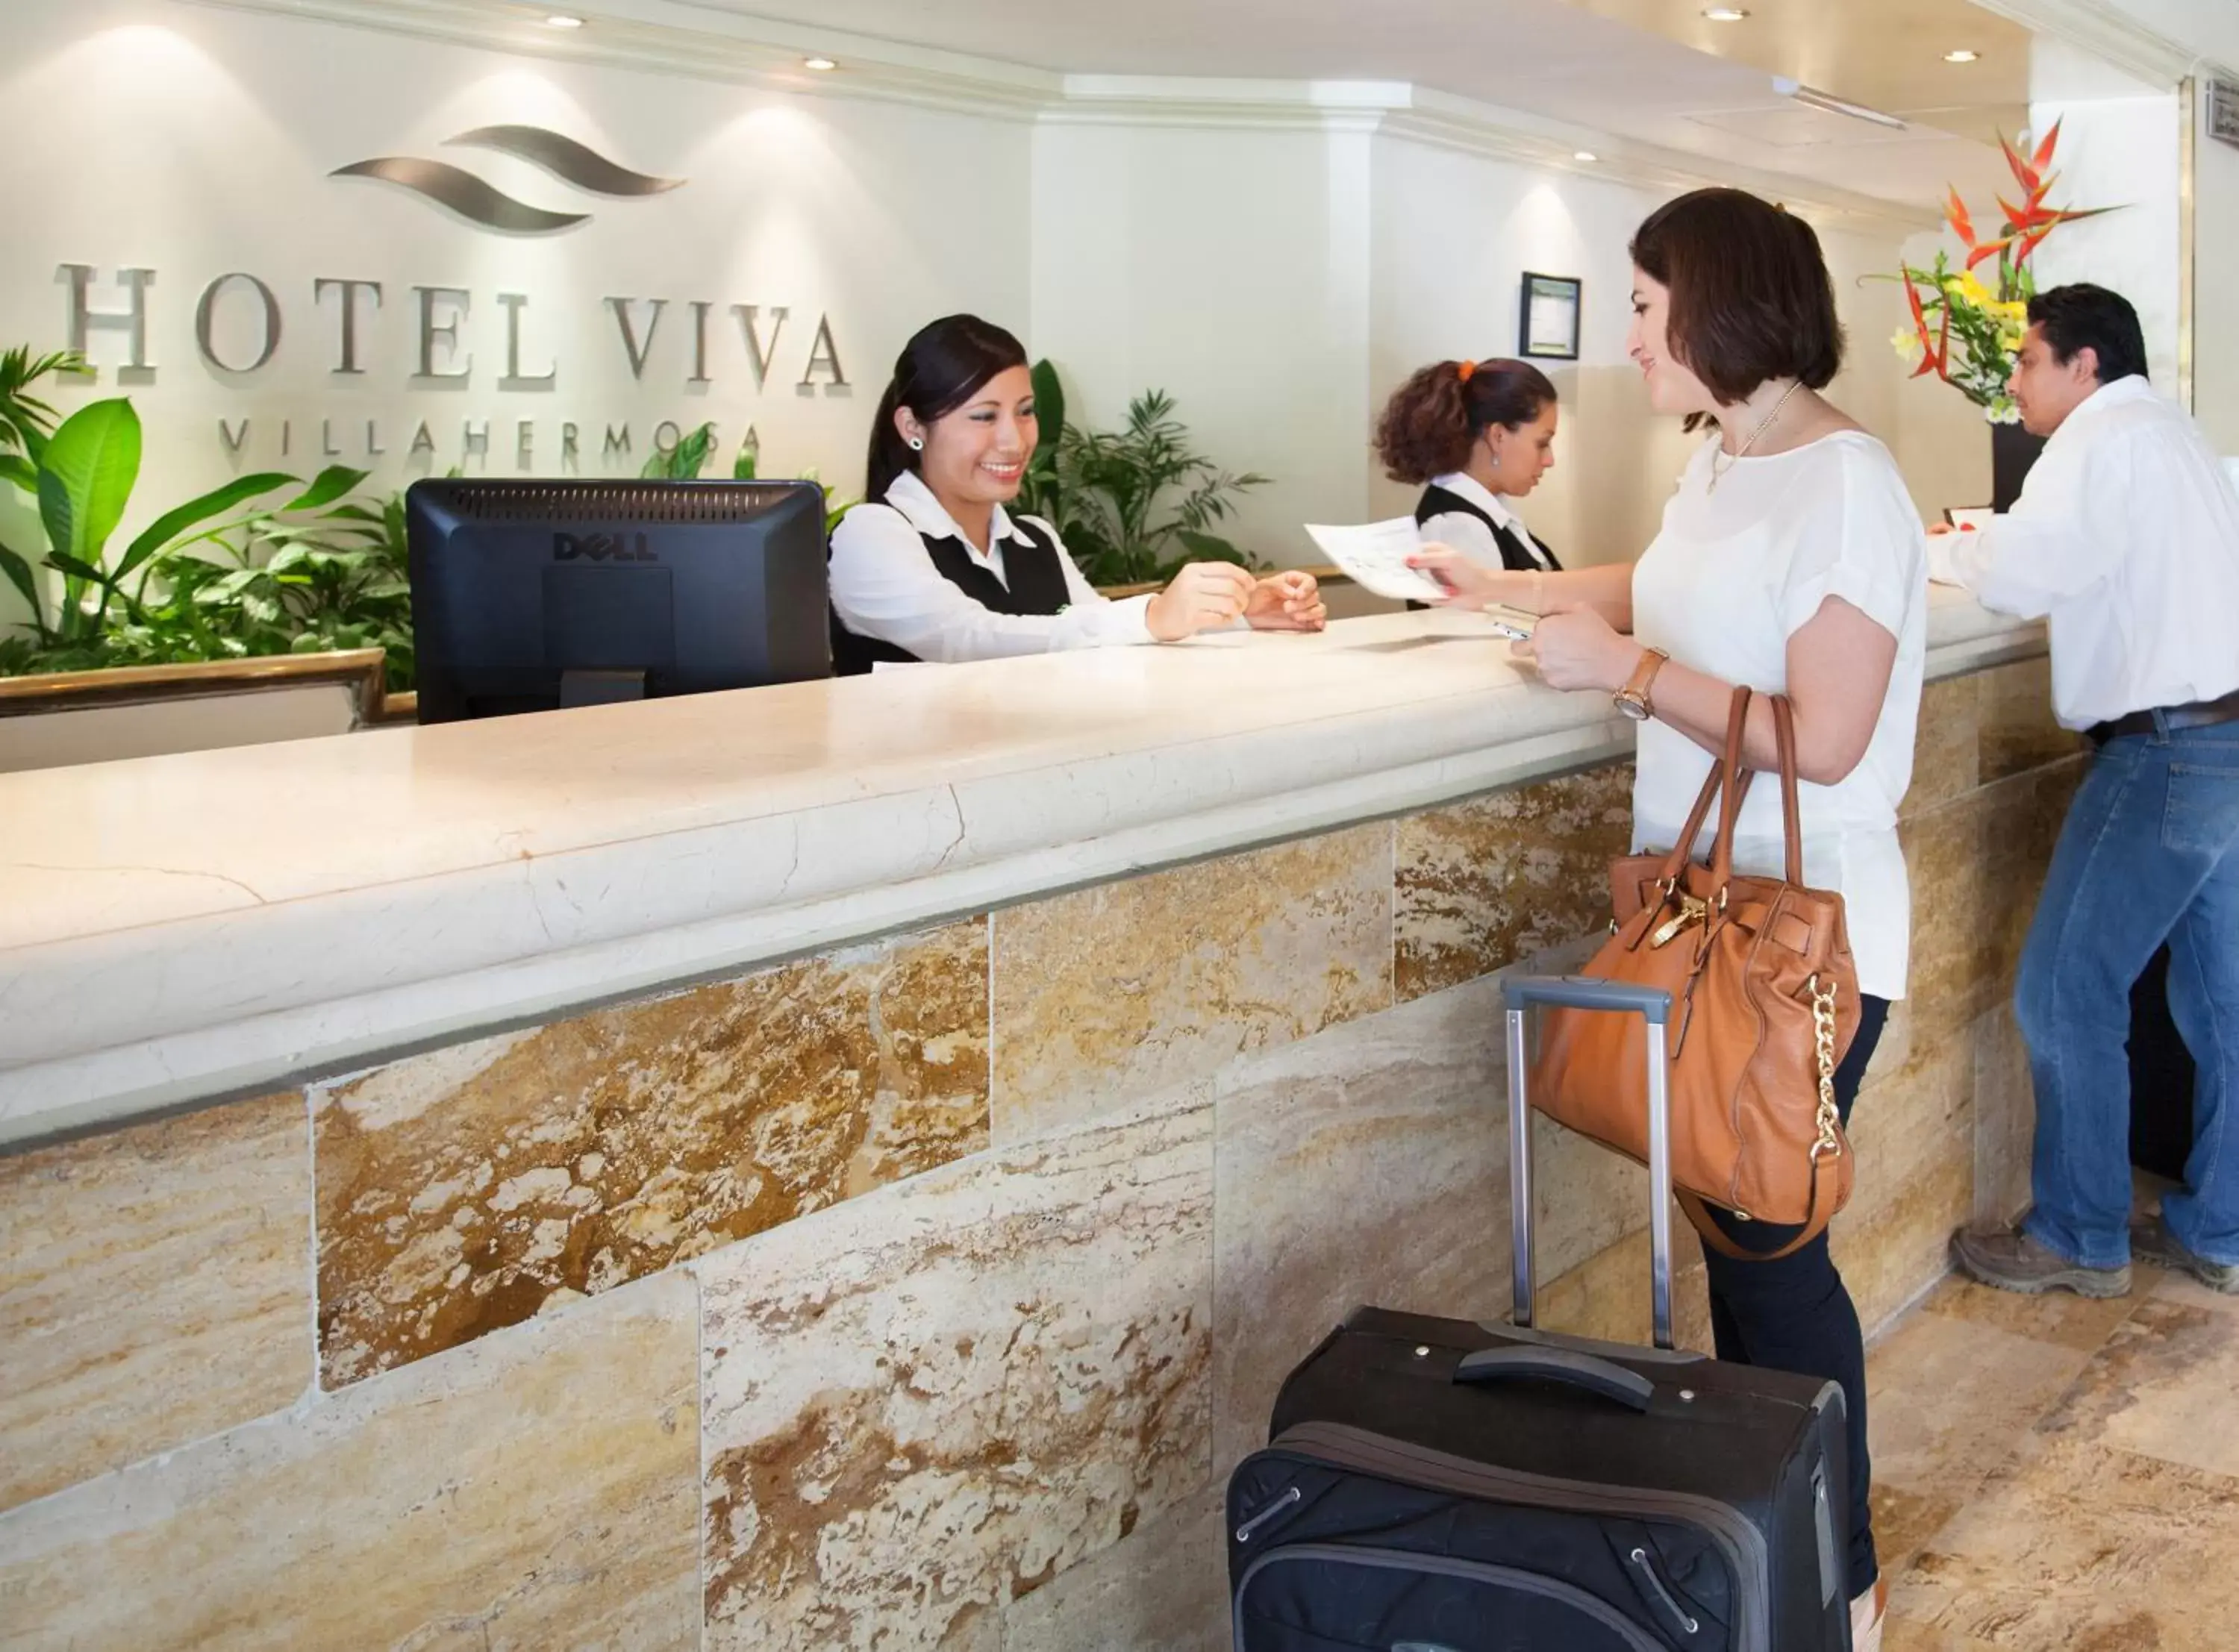 Lobby or reception in Hotel Viva Villahermosa